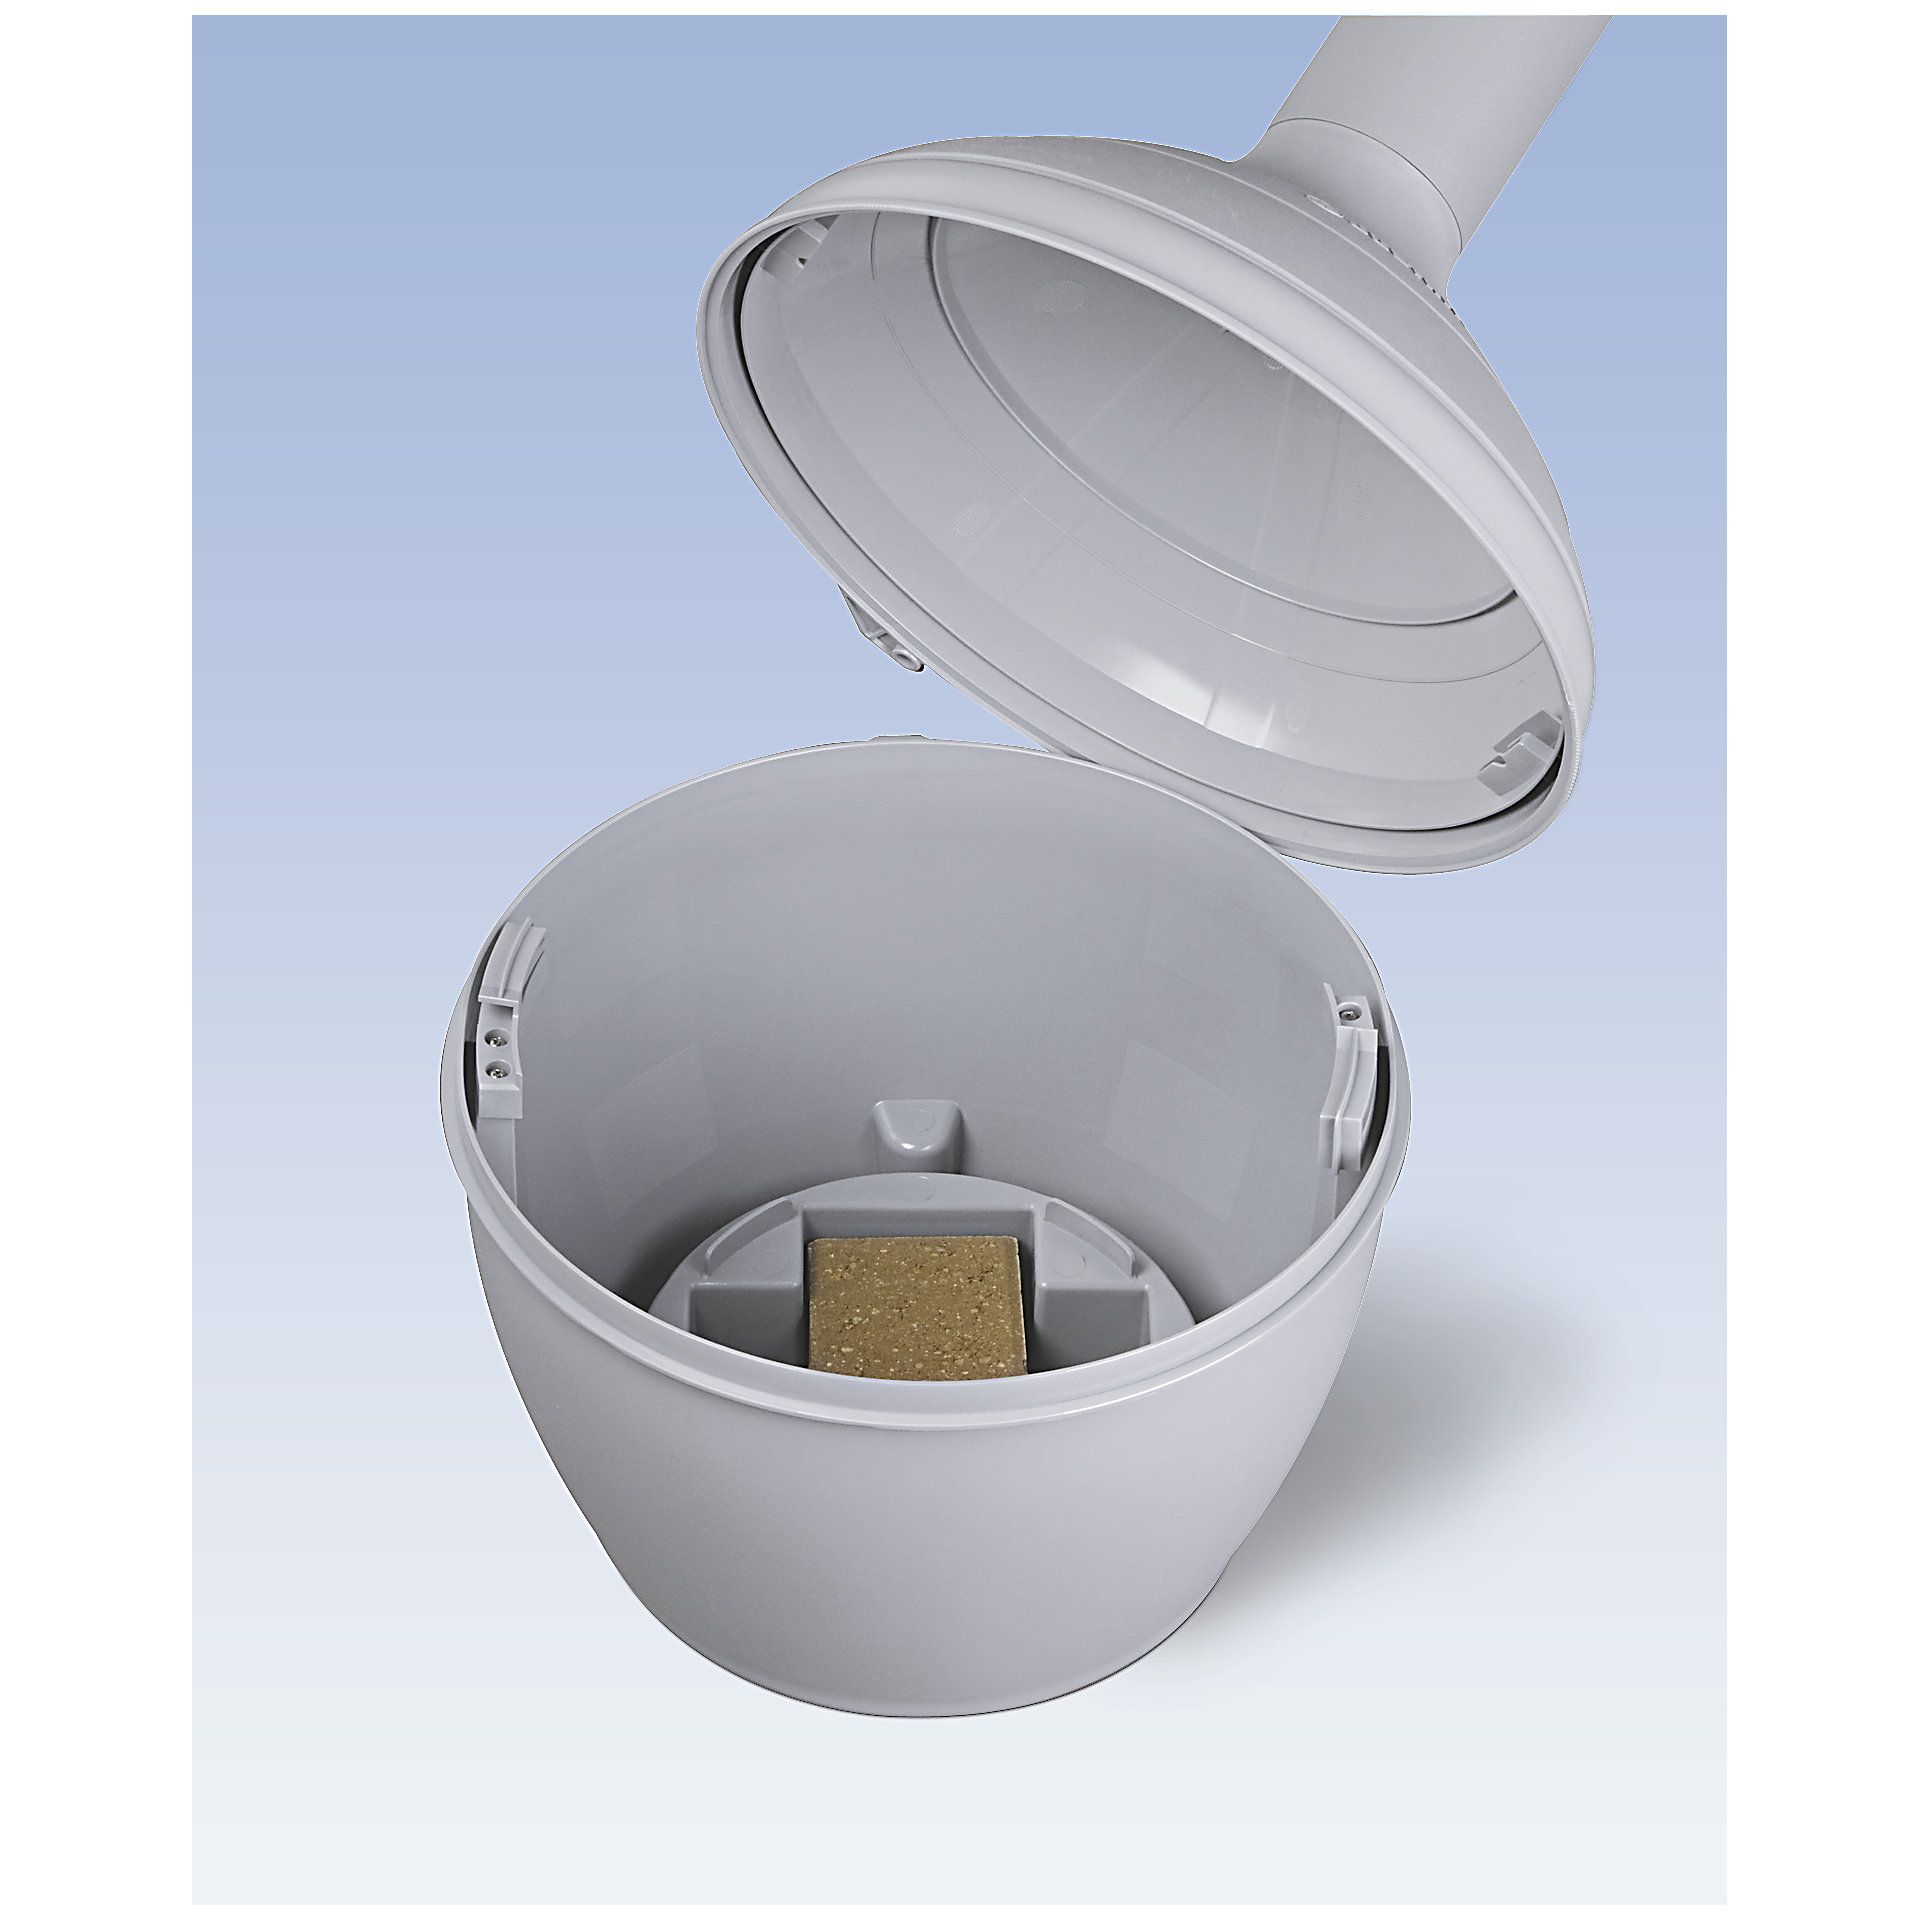 Justrite Sicherheits-Standascher aus Kunststoff Elite Smoker Cease Fire® | 15 Liter Innenbehälter, selbstlöschend | HxB 97x31cm | Beige